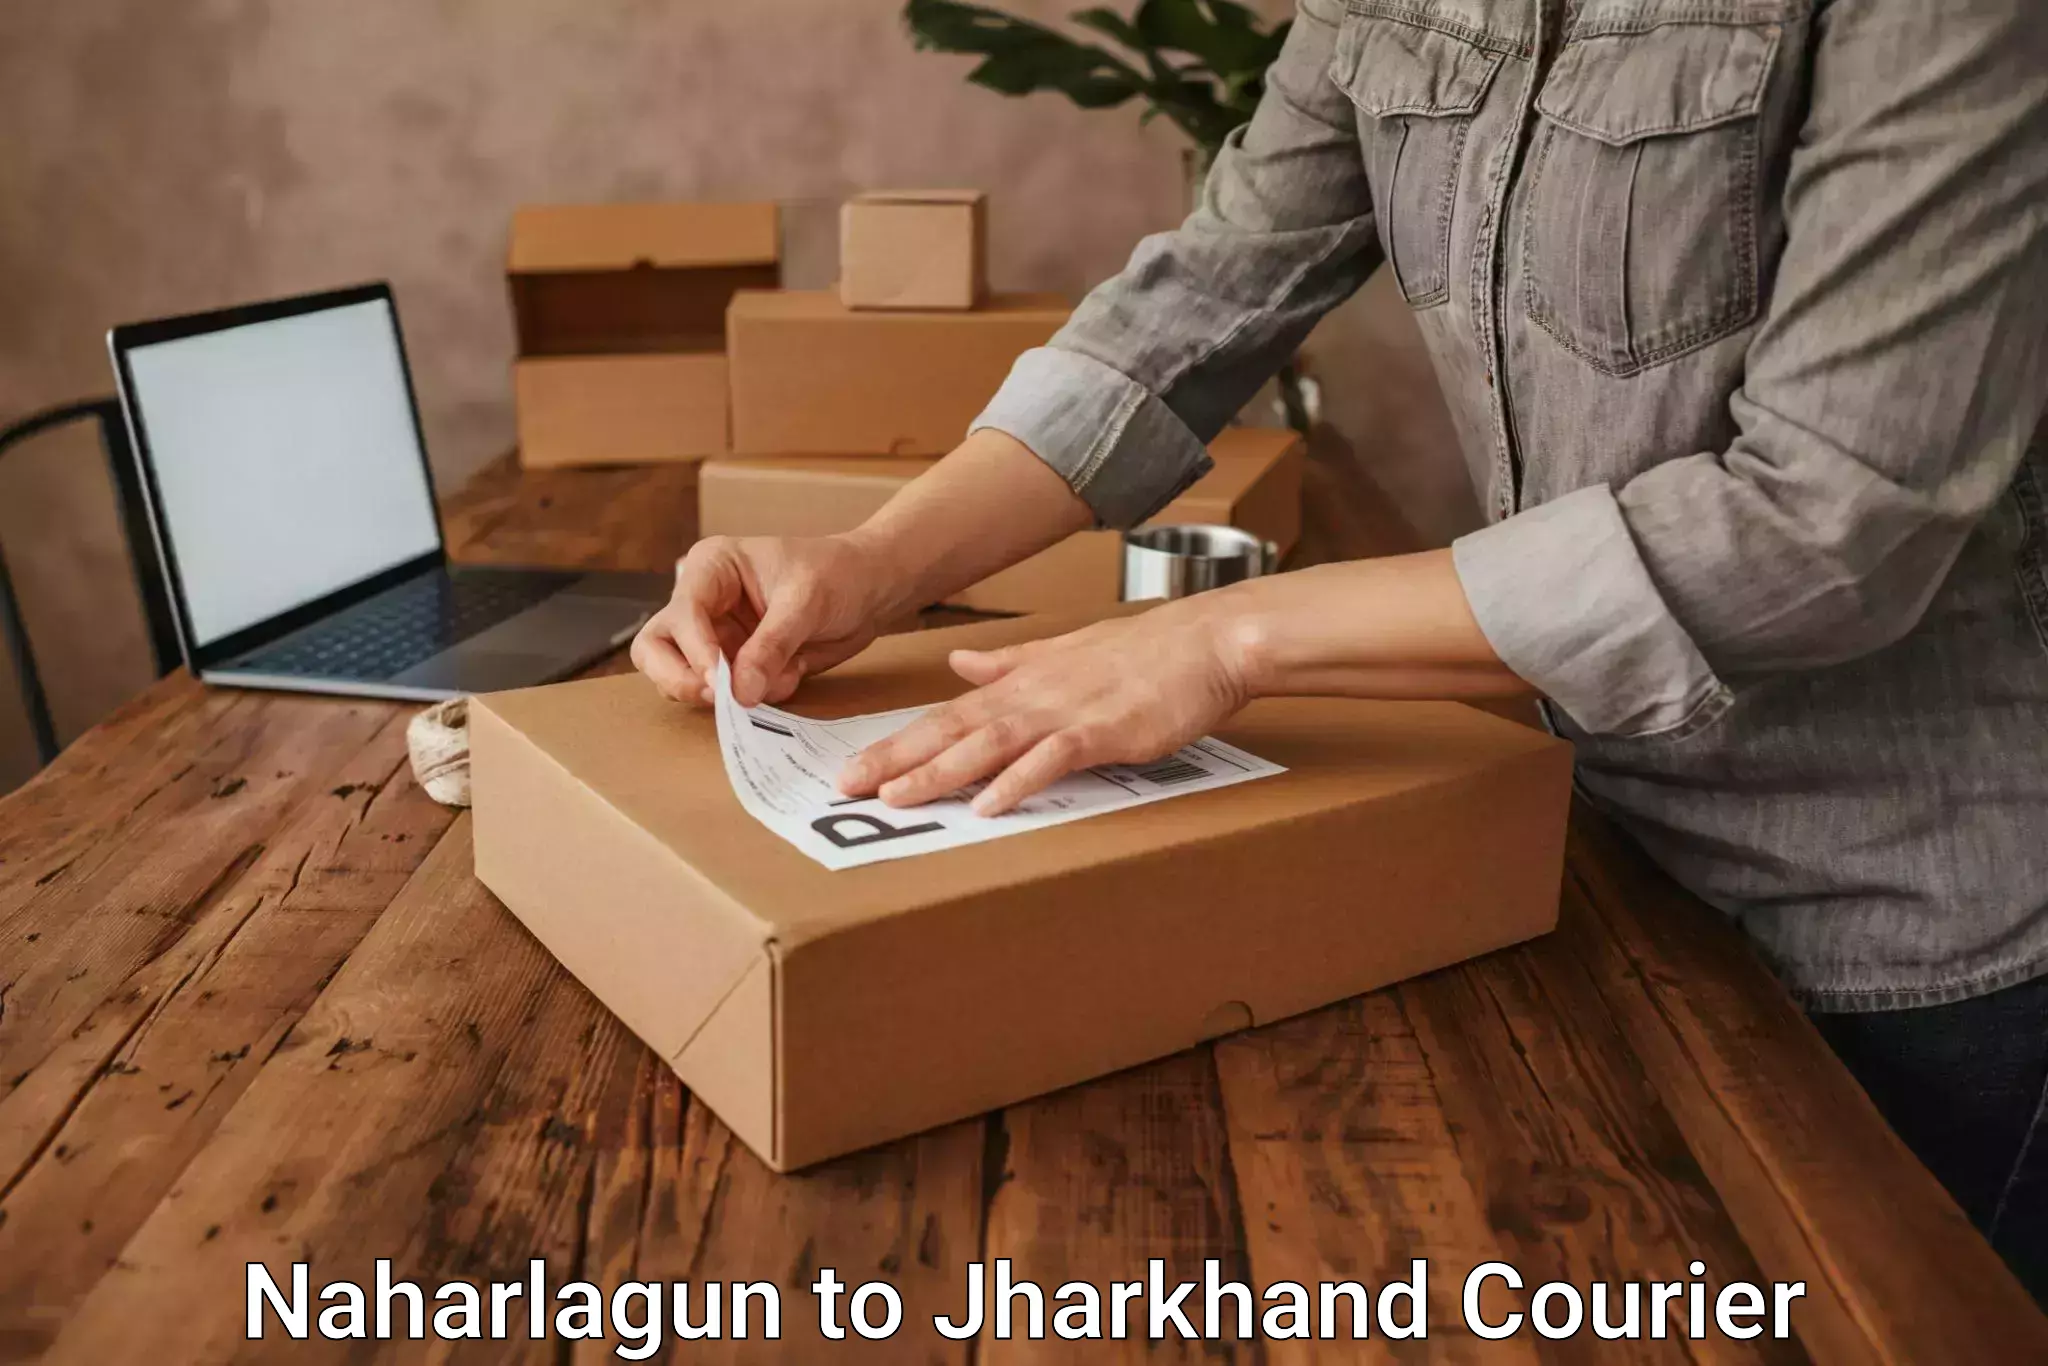 Reliable parcel services Naharlagun to Poreyahat